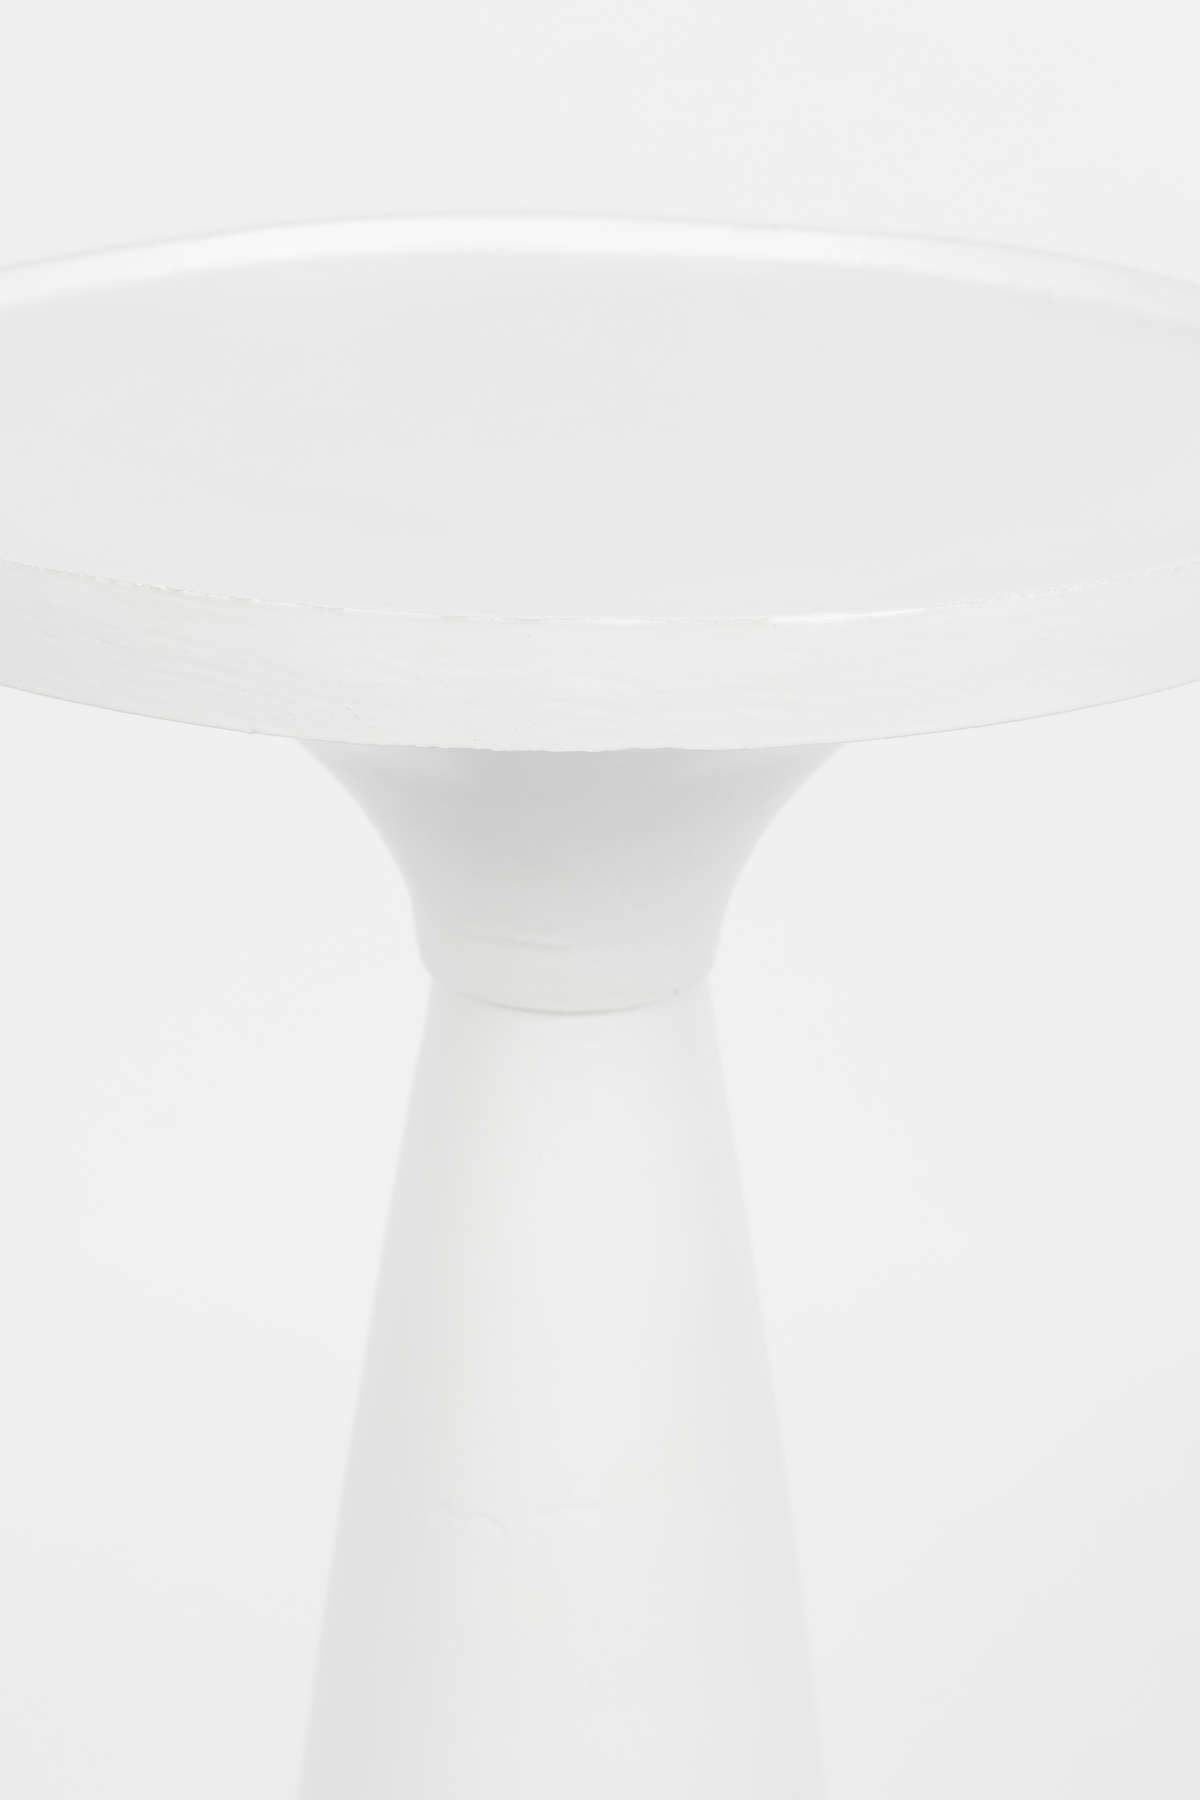 FLOSS white table, Zuiver, Eye on Design